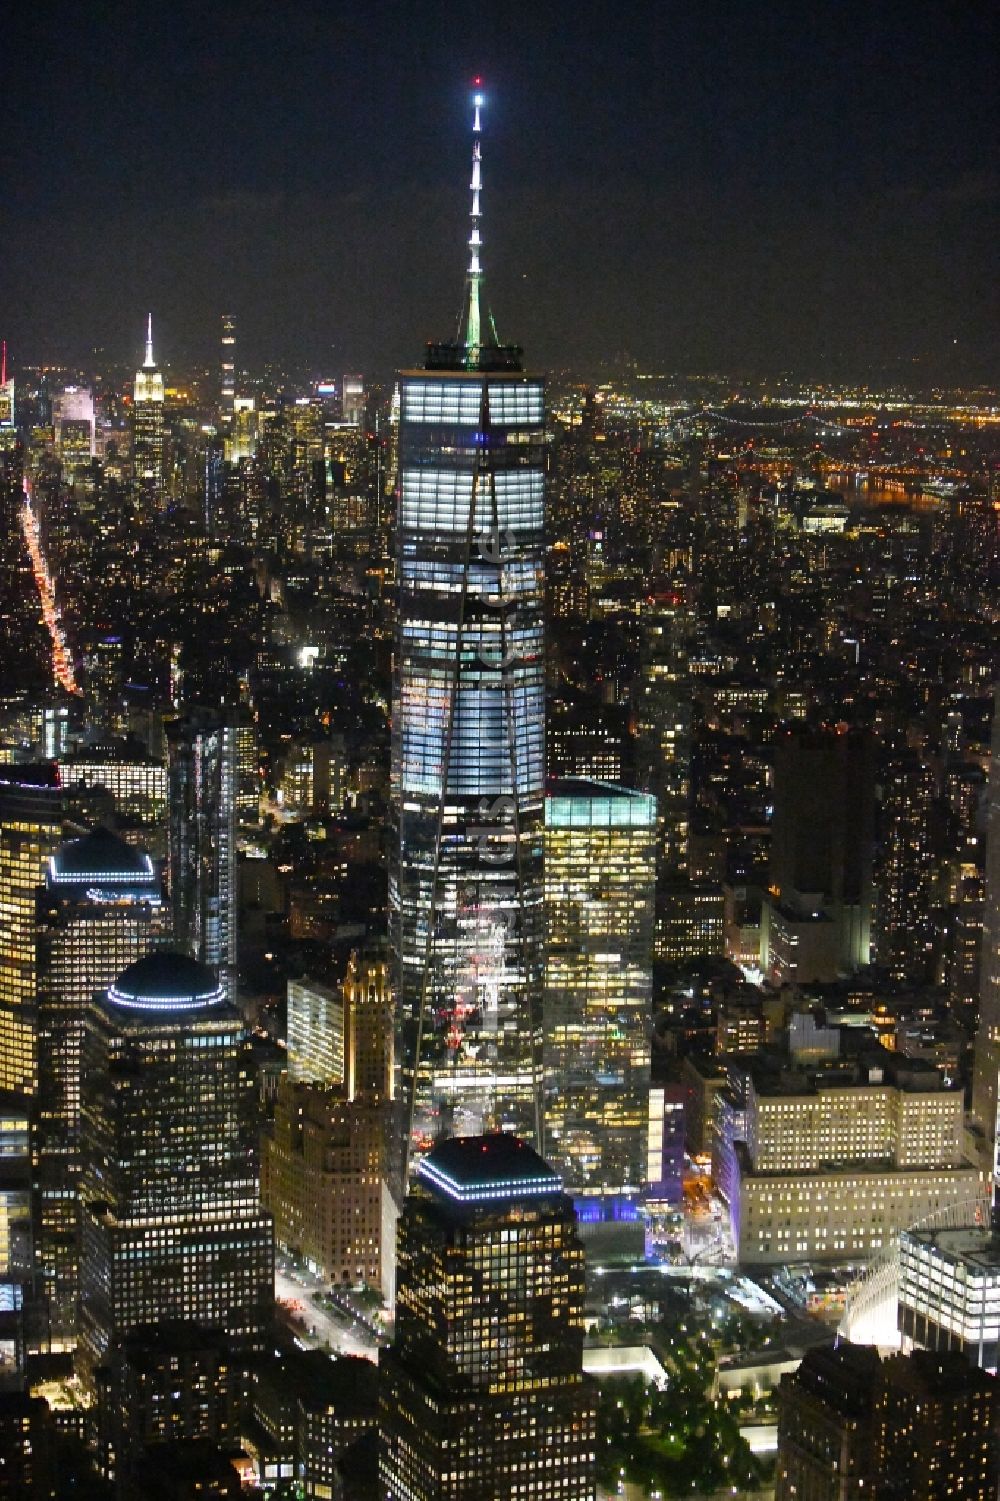 Nacht-Luftaufnahme New York - Nachtluftbild One World Trade Center in der Skyline von Manhattan in New York in USA